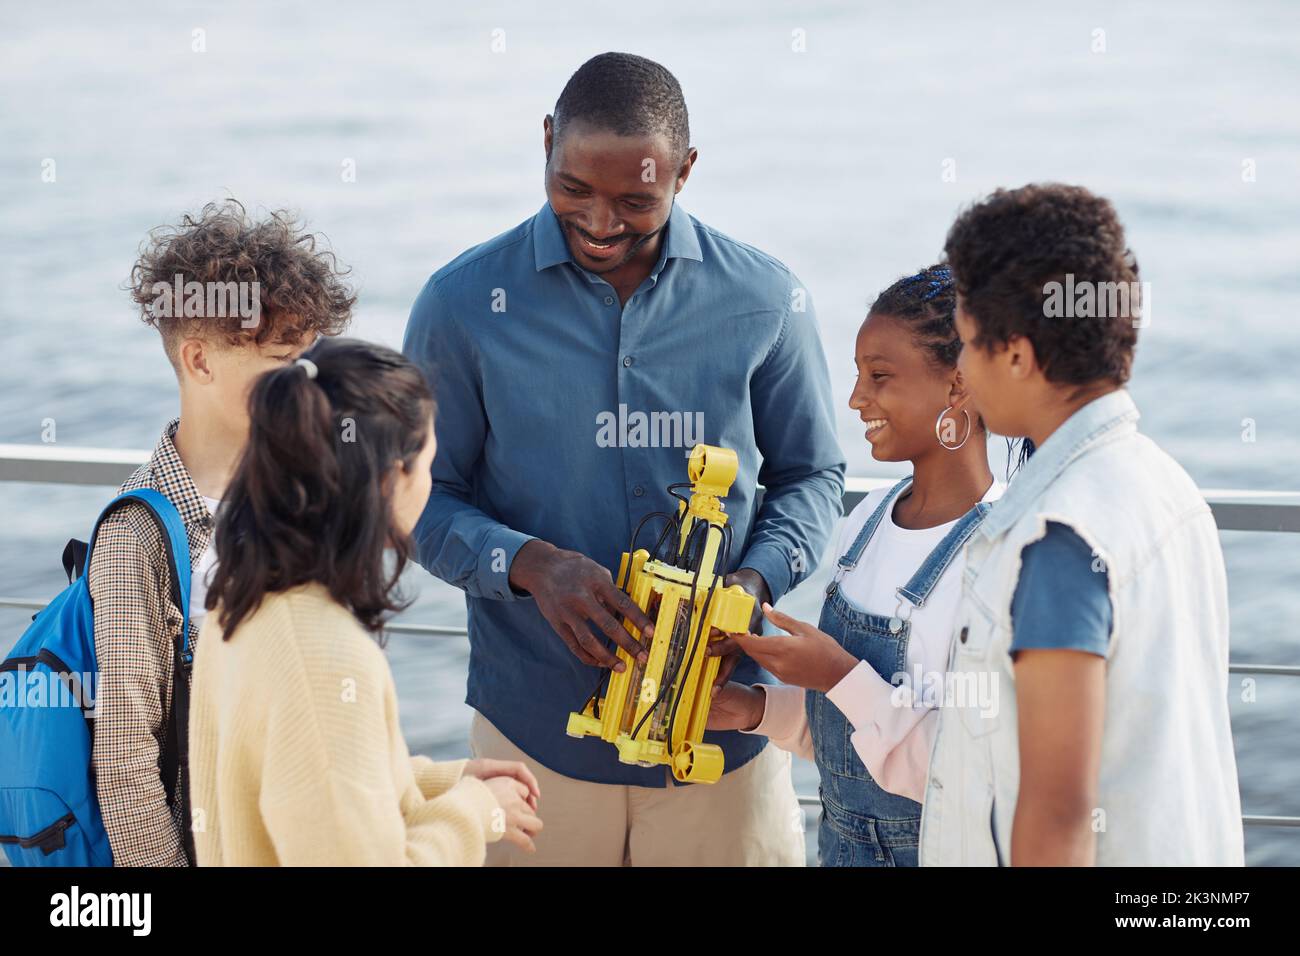 Porträt eines lächelnden männlichen Lehrers, der einer Gruppe von Kindern, die während des Ingenieursvorstehens im Freien im Kreis stehen, ein Robotermodell zeigt Stockfoto